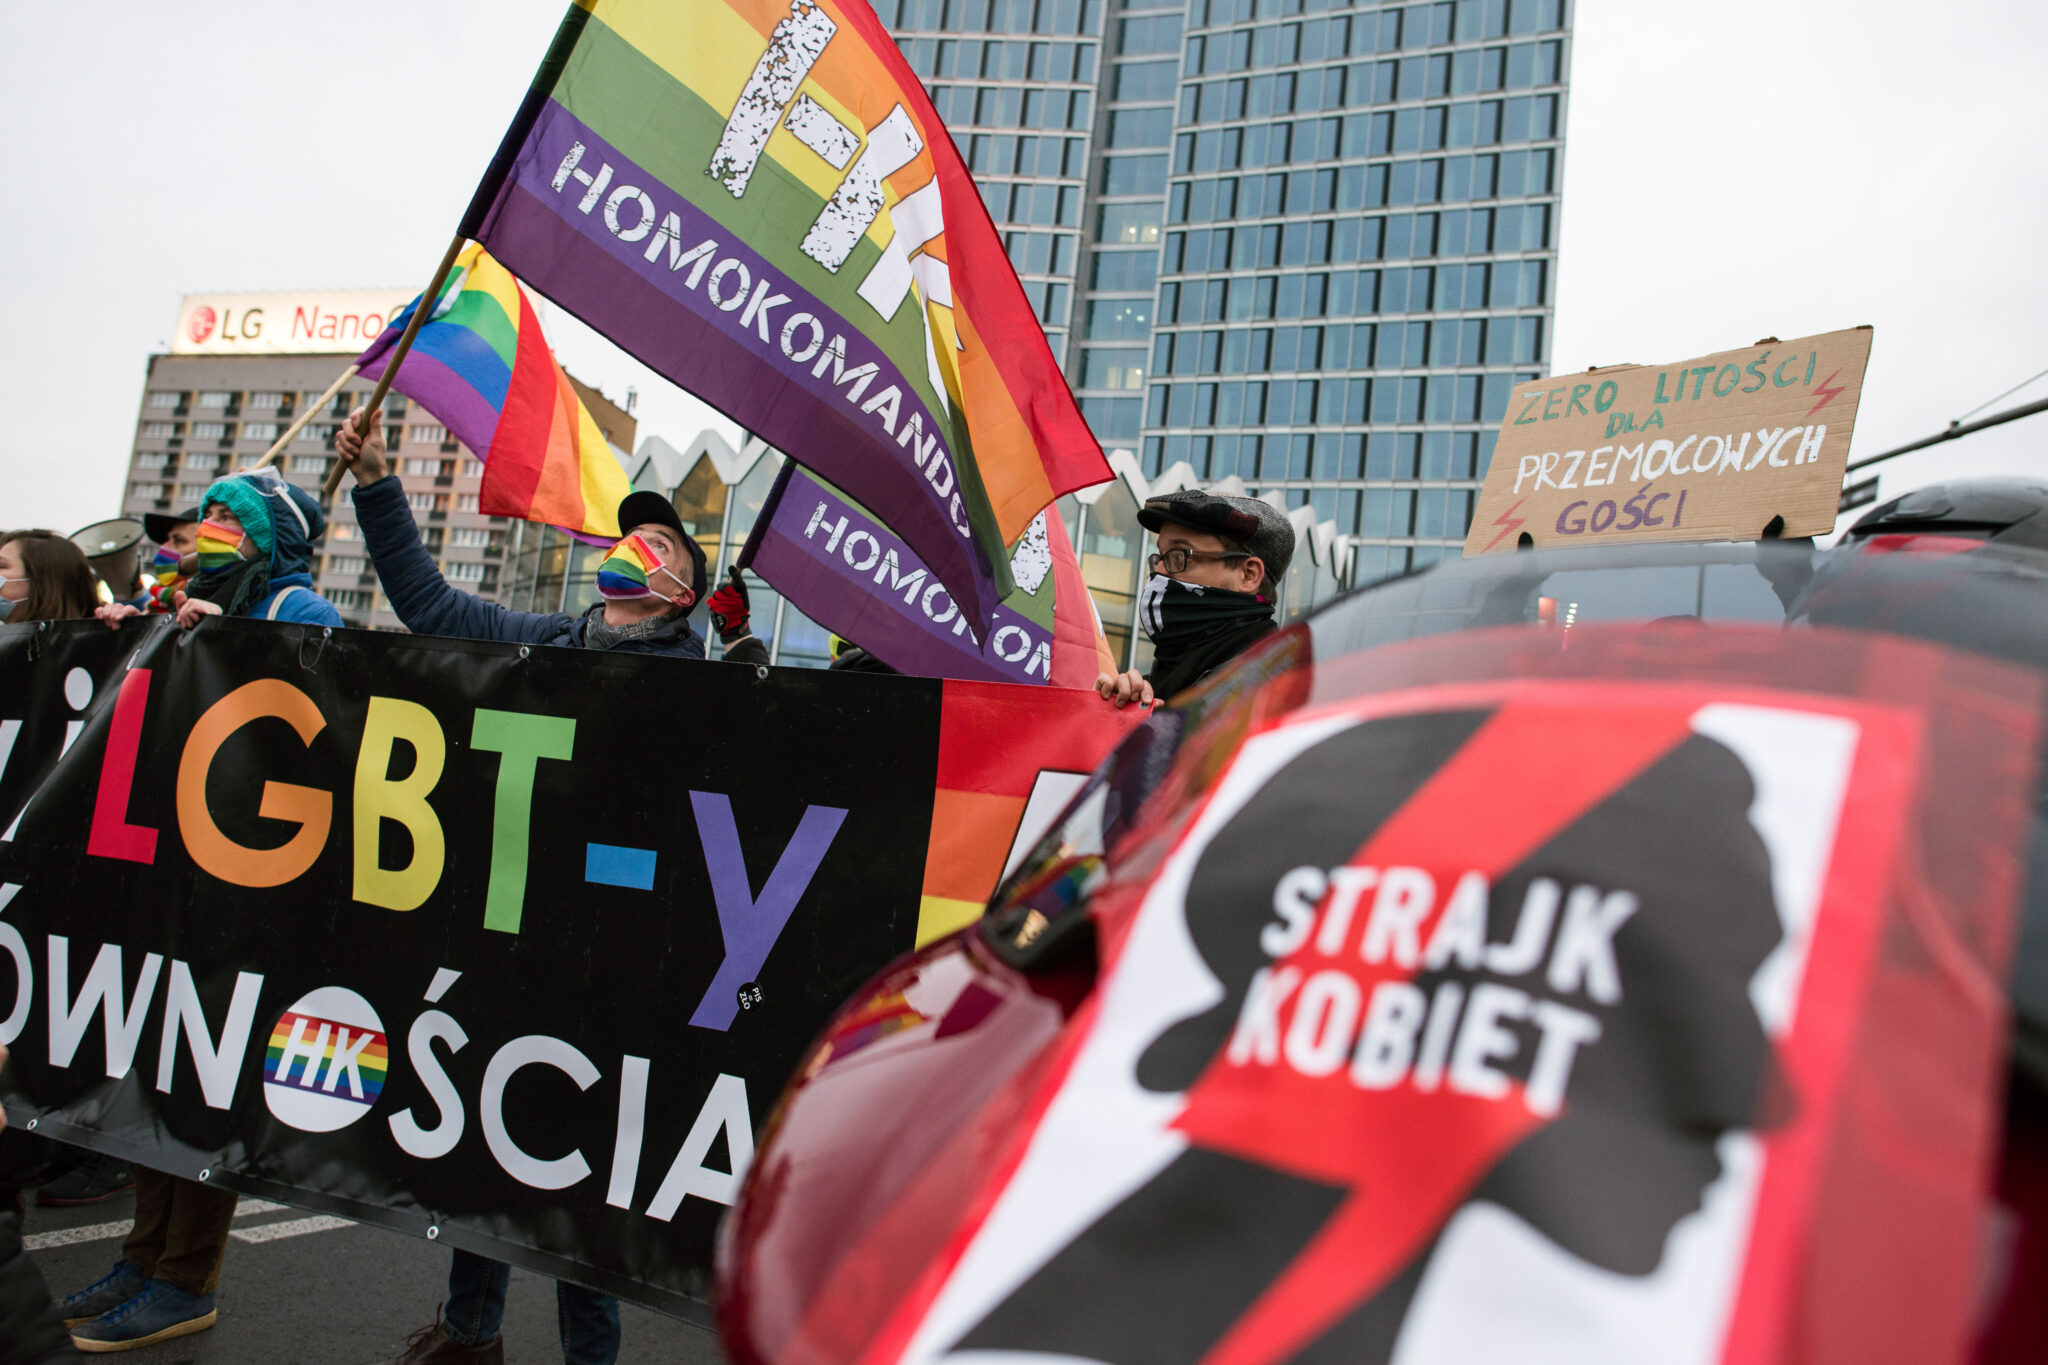 Активисты с плакатами в поддержку ЛГБТ-сообщества. Фото Attila Husejnow/SOPA Images via ZUMA Wire/Scanpix/Leta